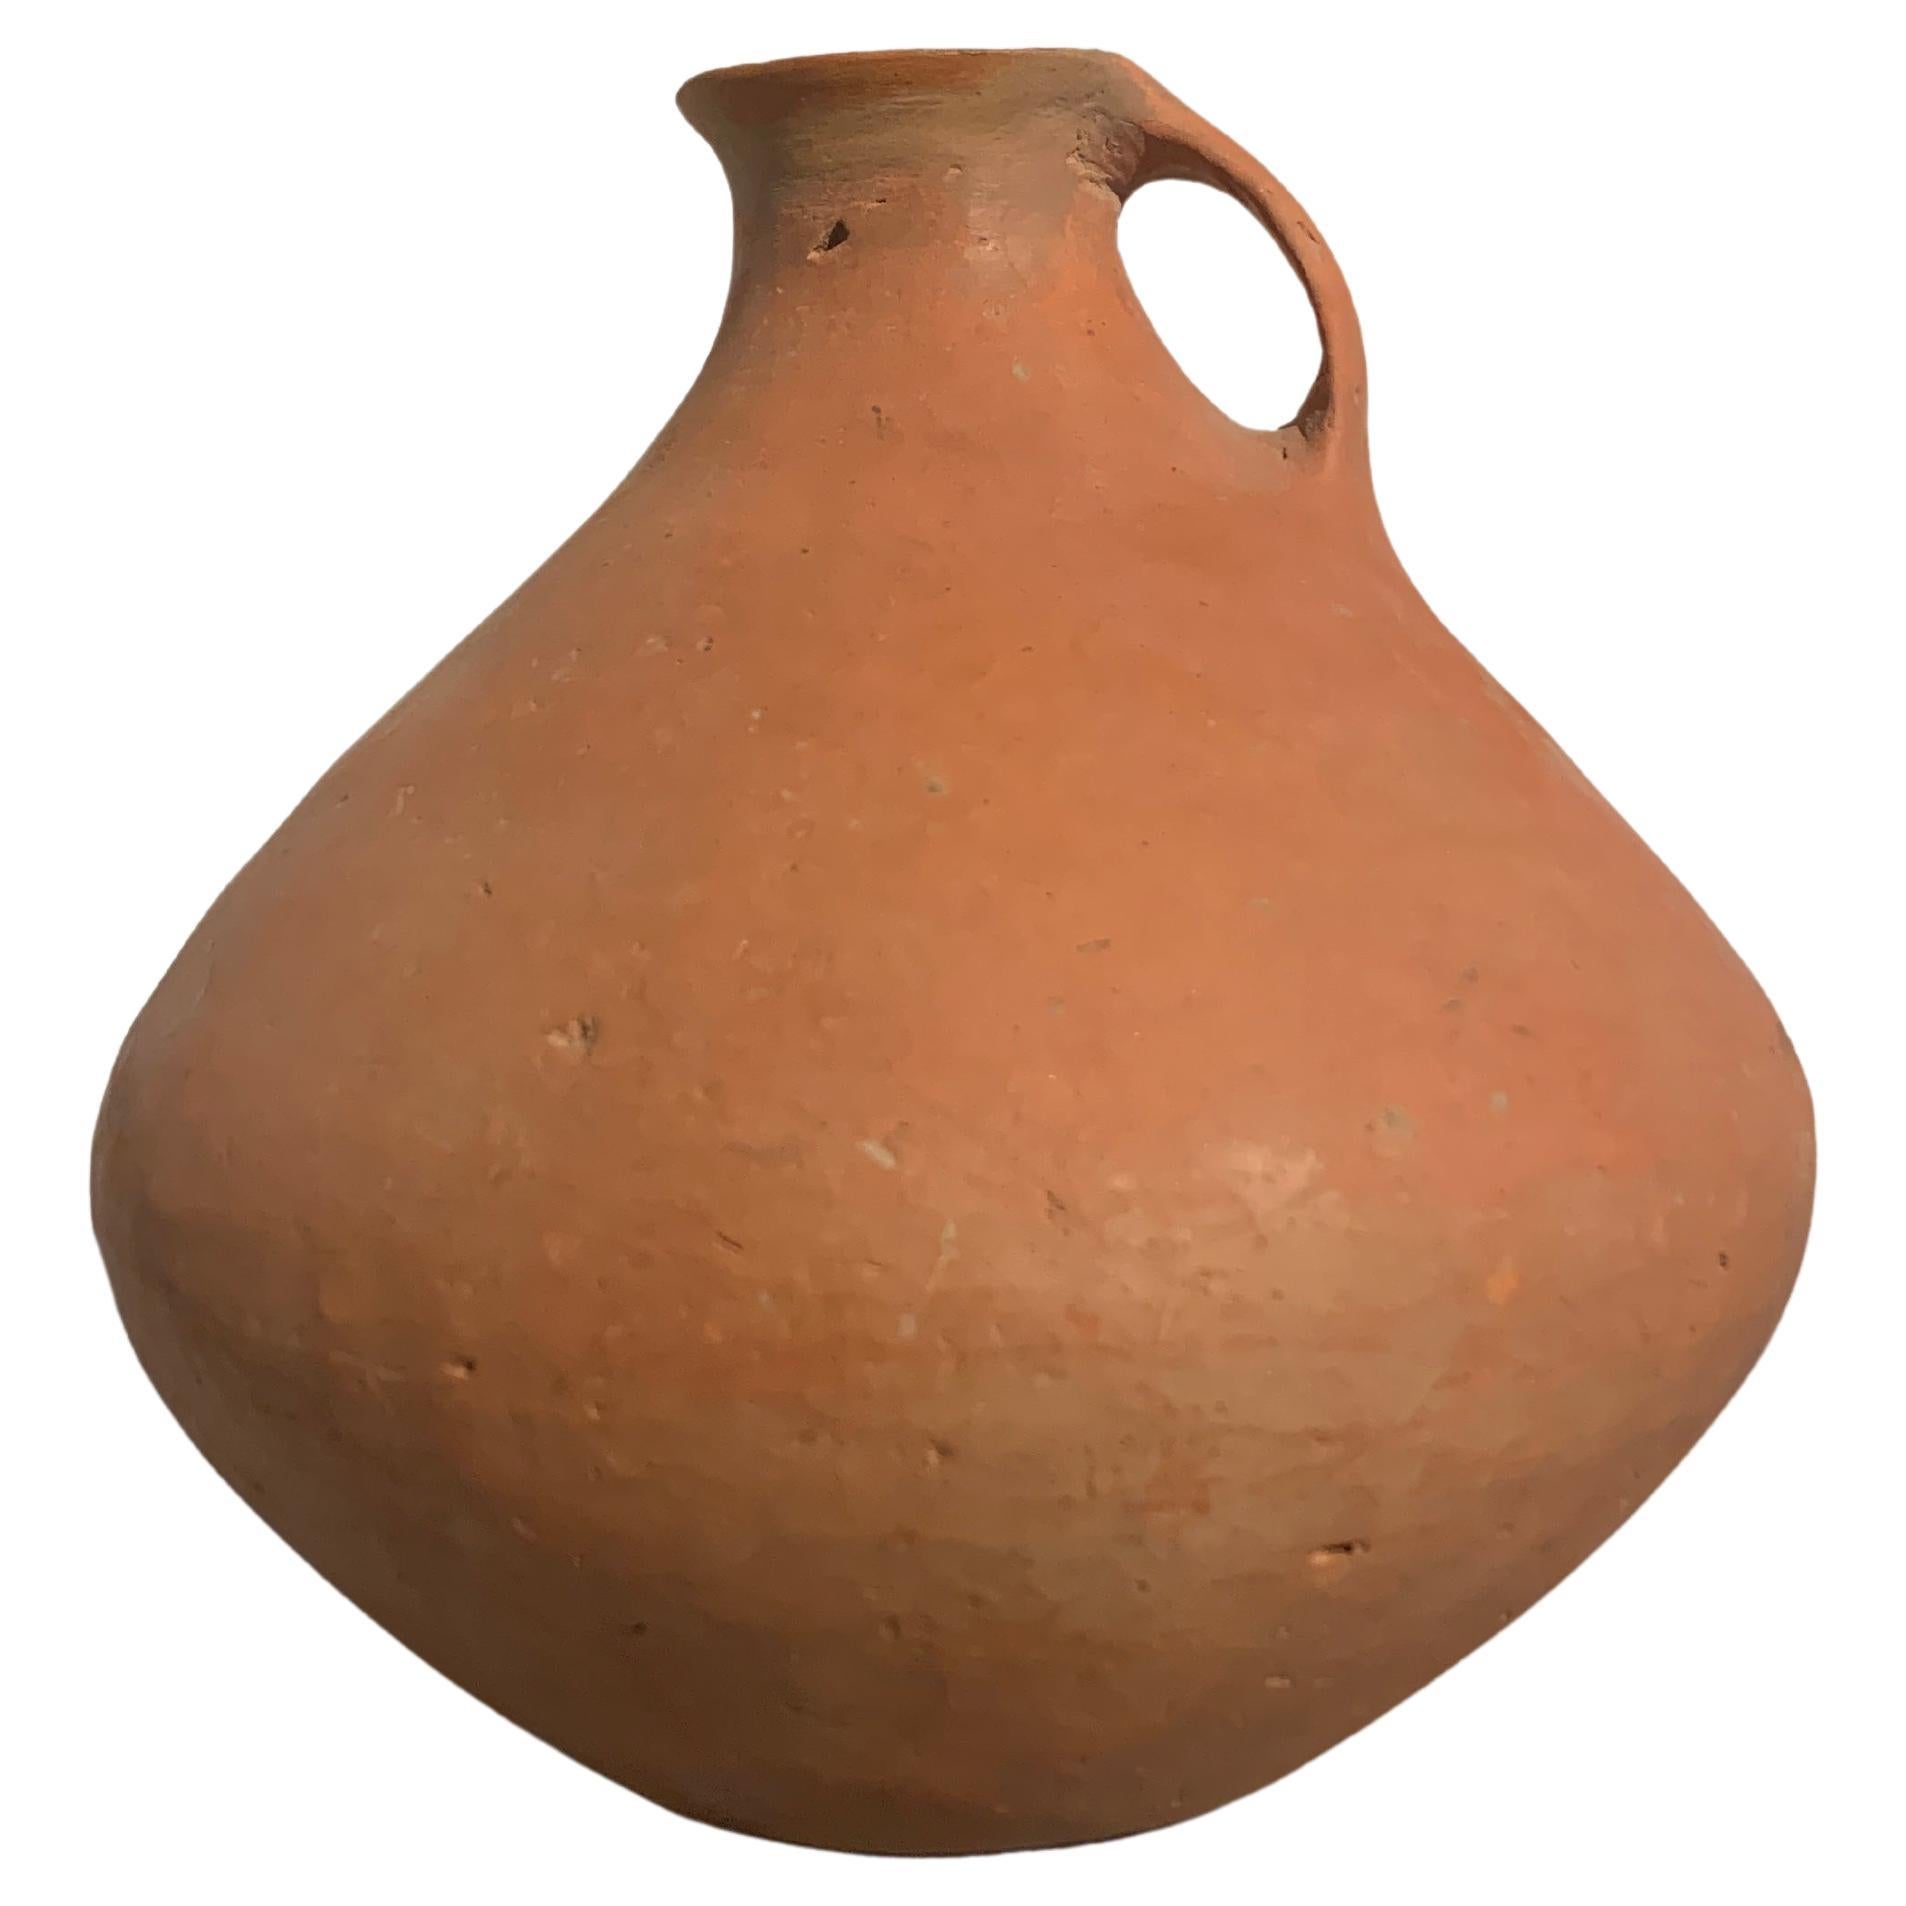 Chinesisches, neolithisches rotes Keramikgefäß aus der Qijia-Kultur, 2200 v. Chr. - 1600 v. Chr., China